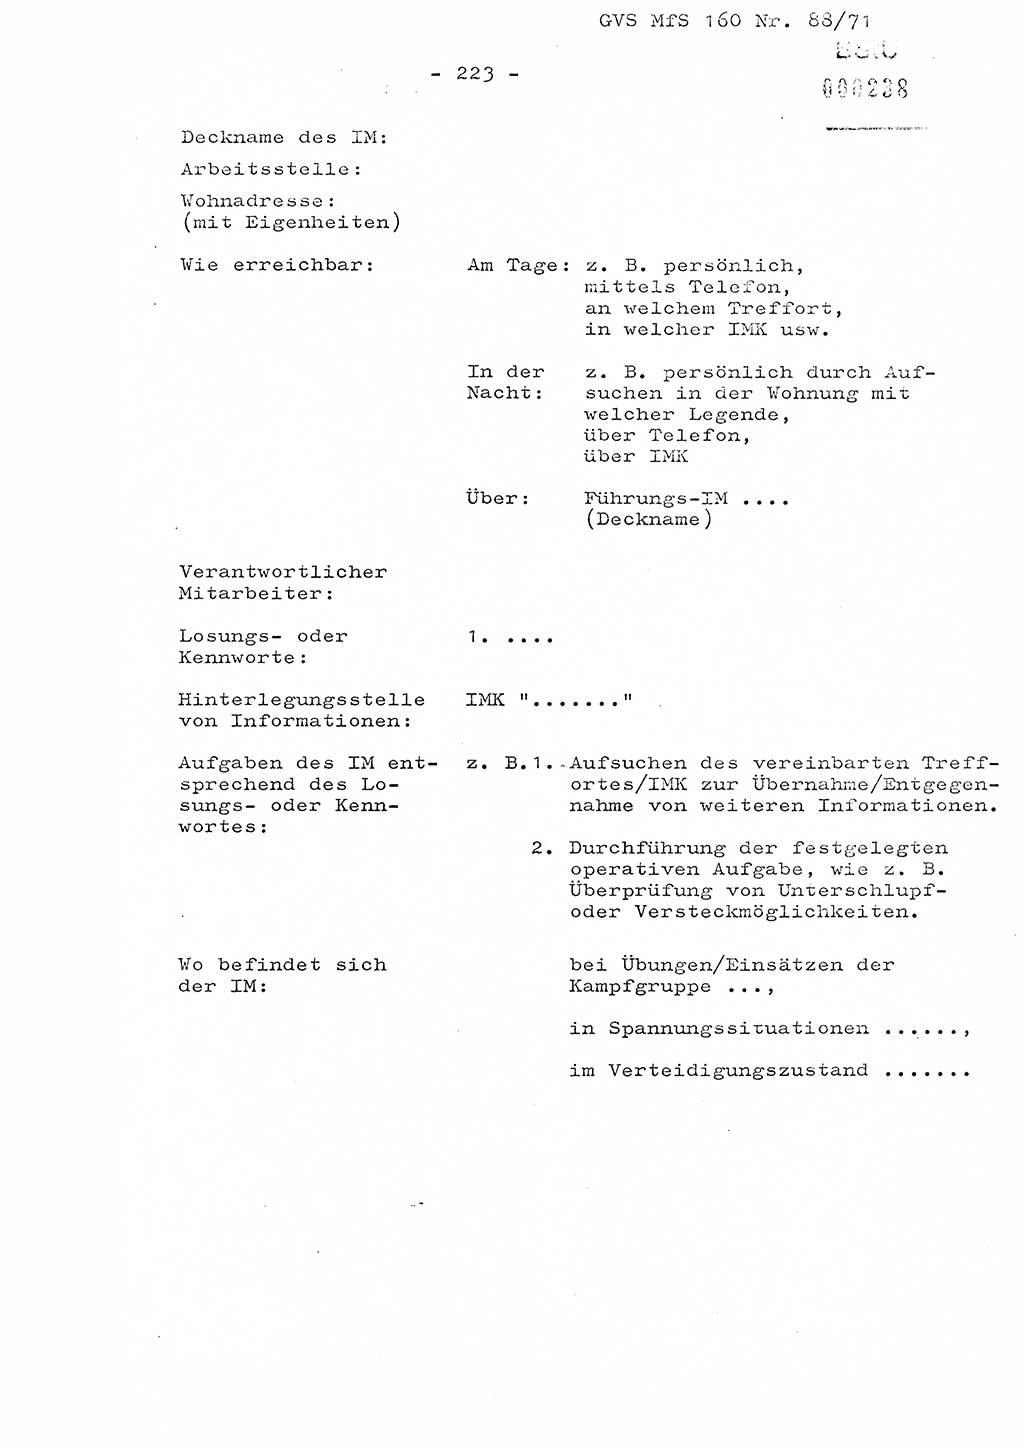 Dissertation Oberstleutnant Josef Schwarz (BV Schwerin), Major Fritz Amm (JHS), Hauptmann Peter Gräßler (JHS), Ministerium für Staatssicherheit (MfS) [Deutsche Demokratische Republik (DDR)], Juristische Hochschule (JHS), Geheime Verschlußsache (GVS) 160-88/71, Potsdam 1972, Seite 223 (Diss. MfS DDR JHS GVS 160-88/71 1972, S. 223)